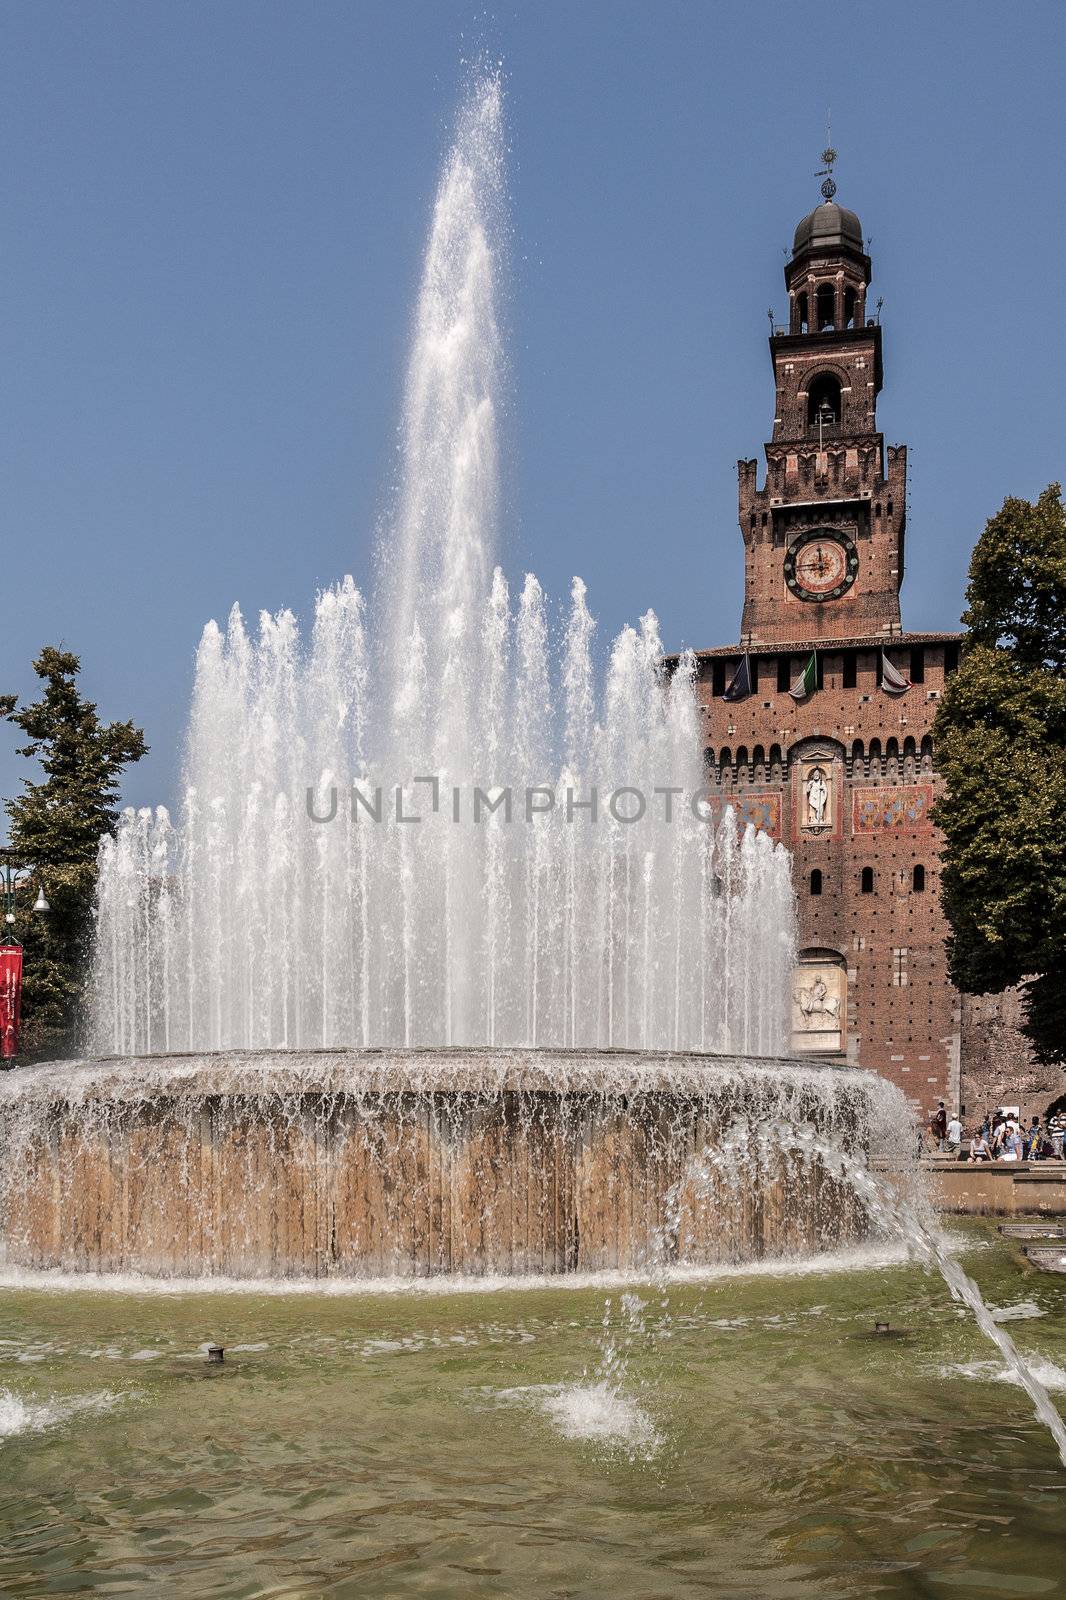 The Castello Sforzesco, a large castle in Milan, Italy.